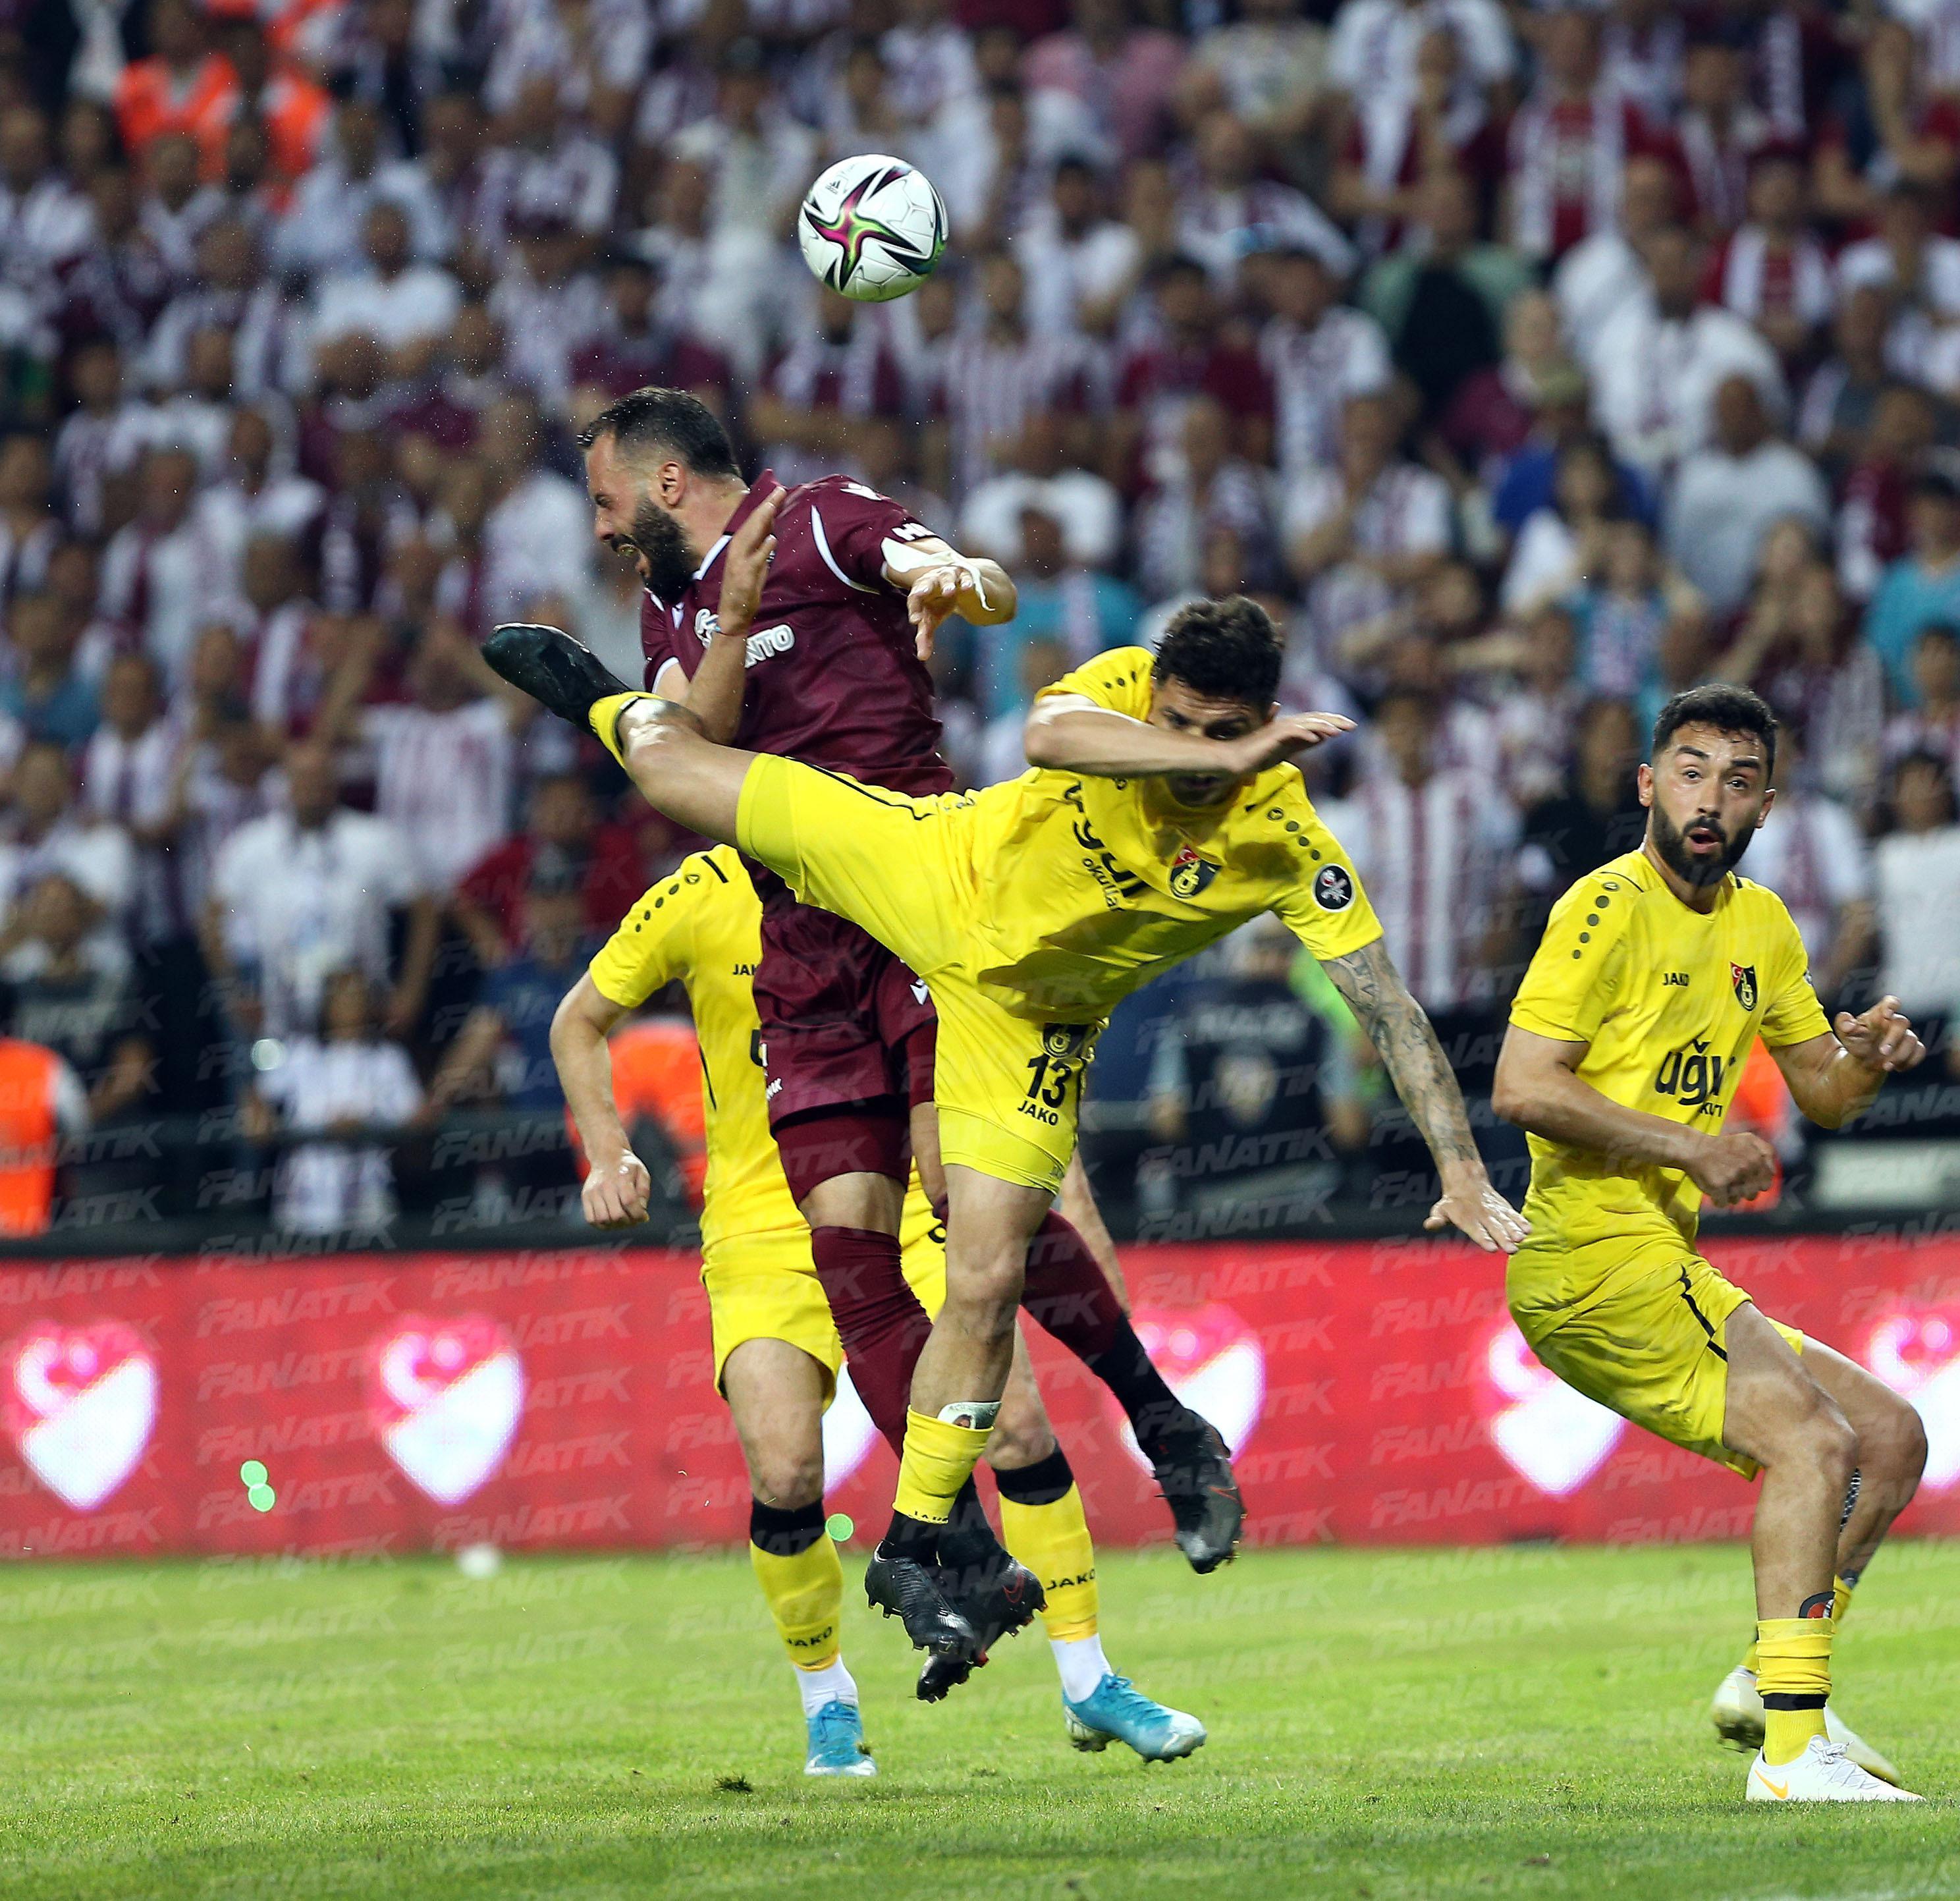 İSTANBULSPOR SÜPER LİGDE (ÖZET) Bandırmaspor - İstanbulspor maç sonucu: 1-2